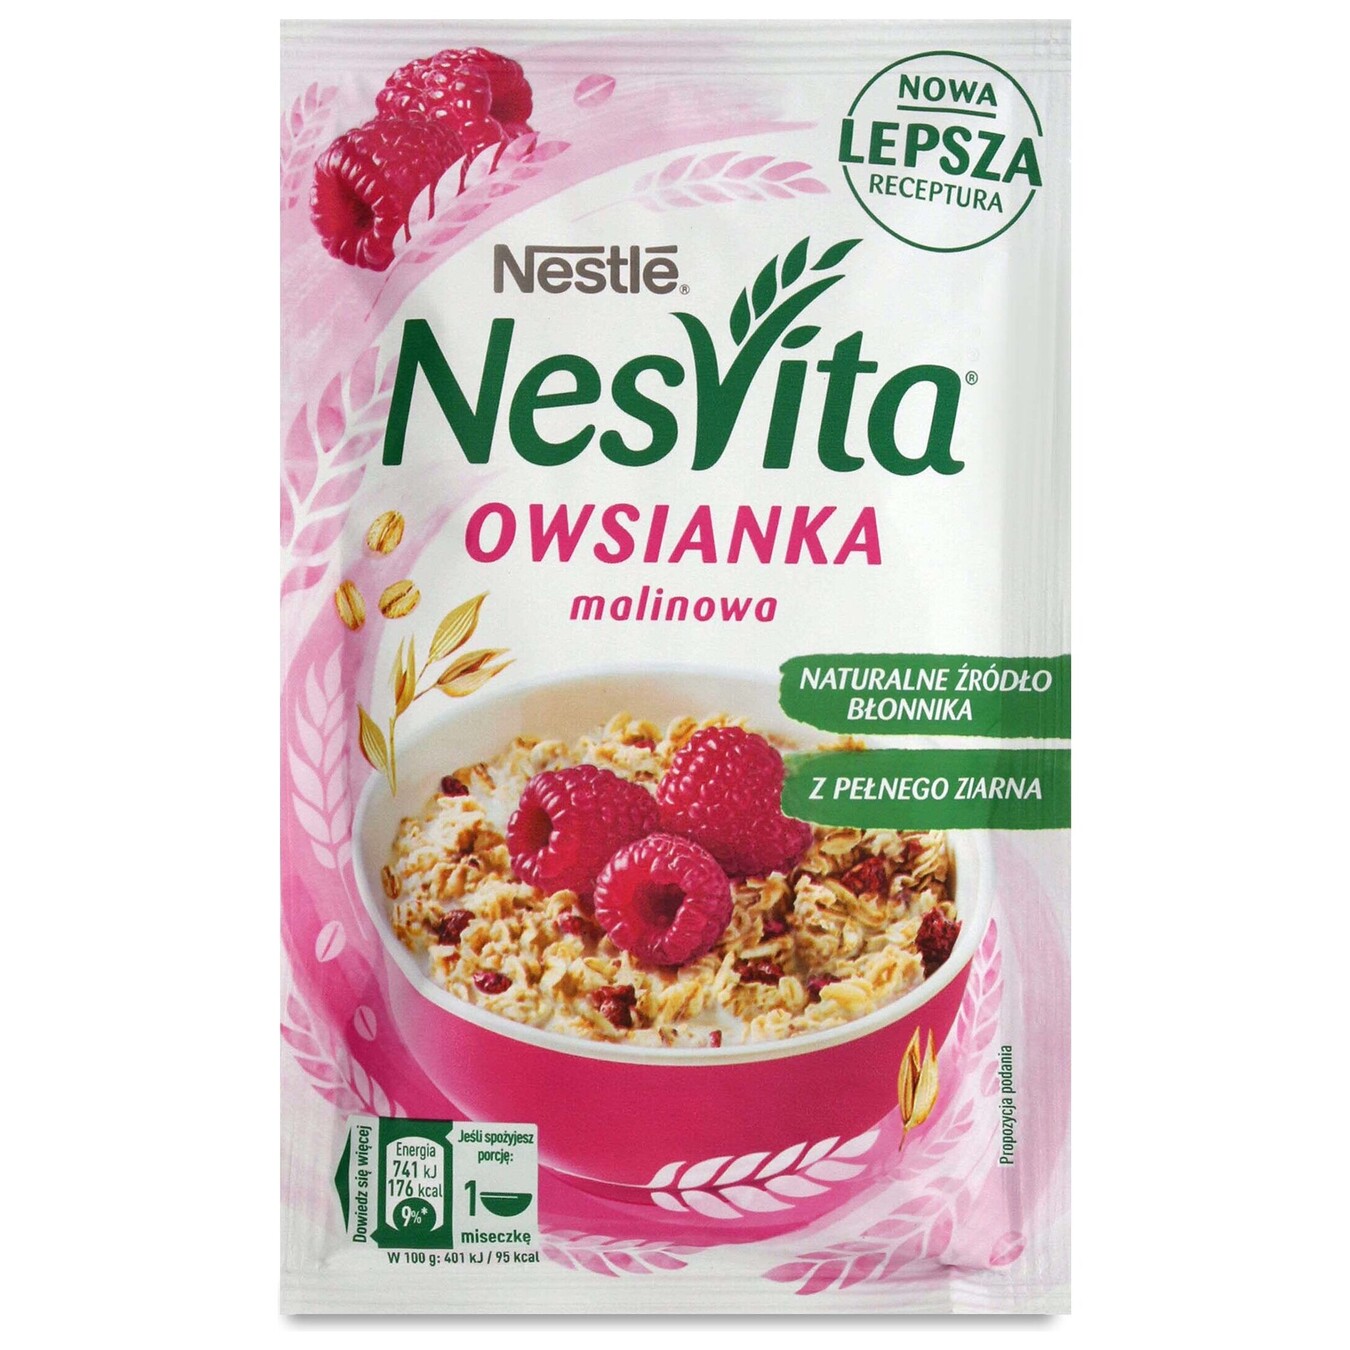 Nestle porridge with pieces of raspberry unlit 45g